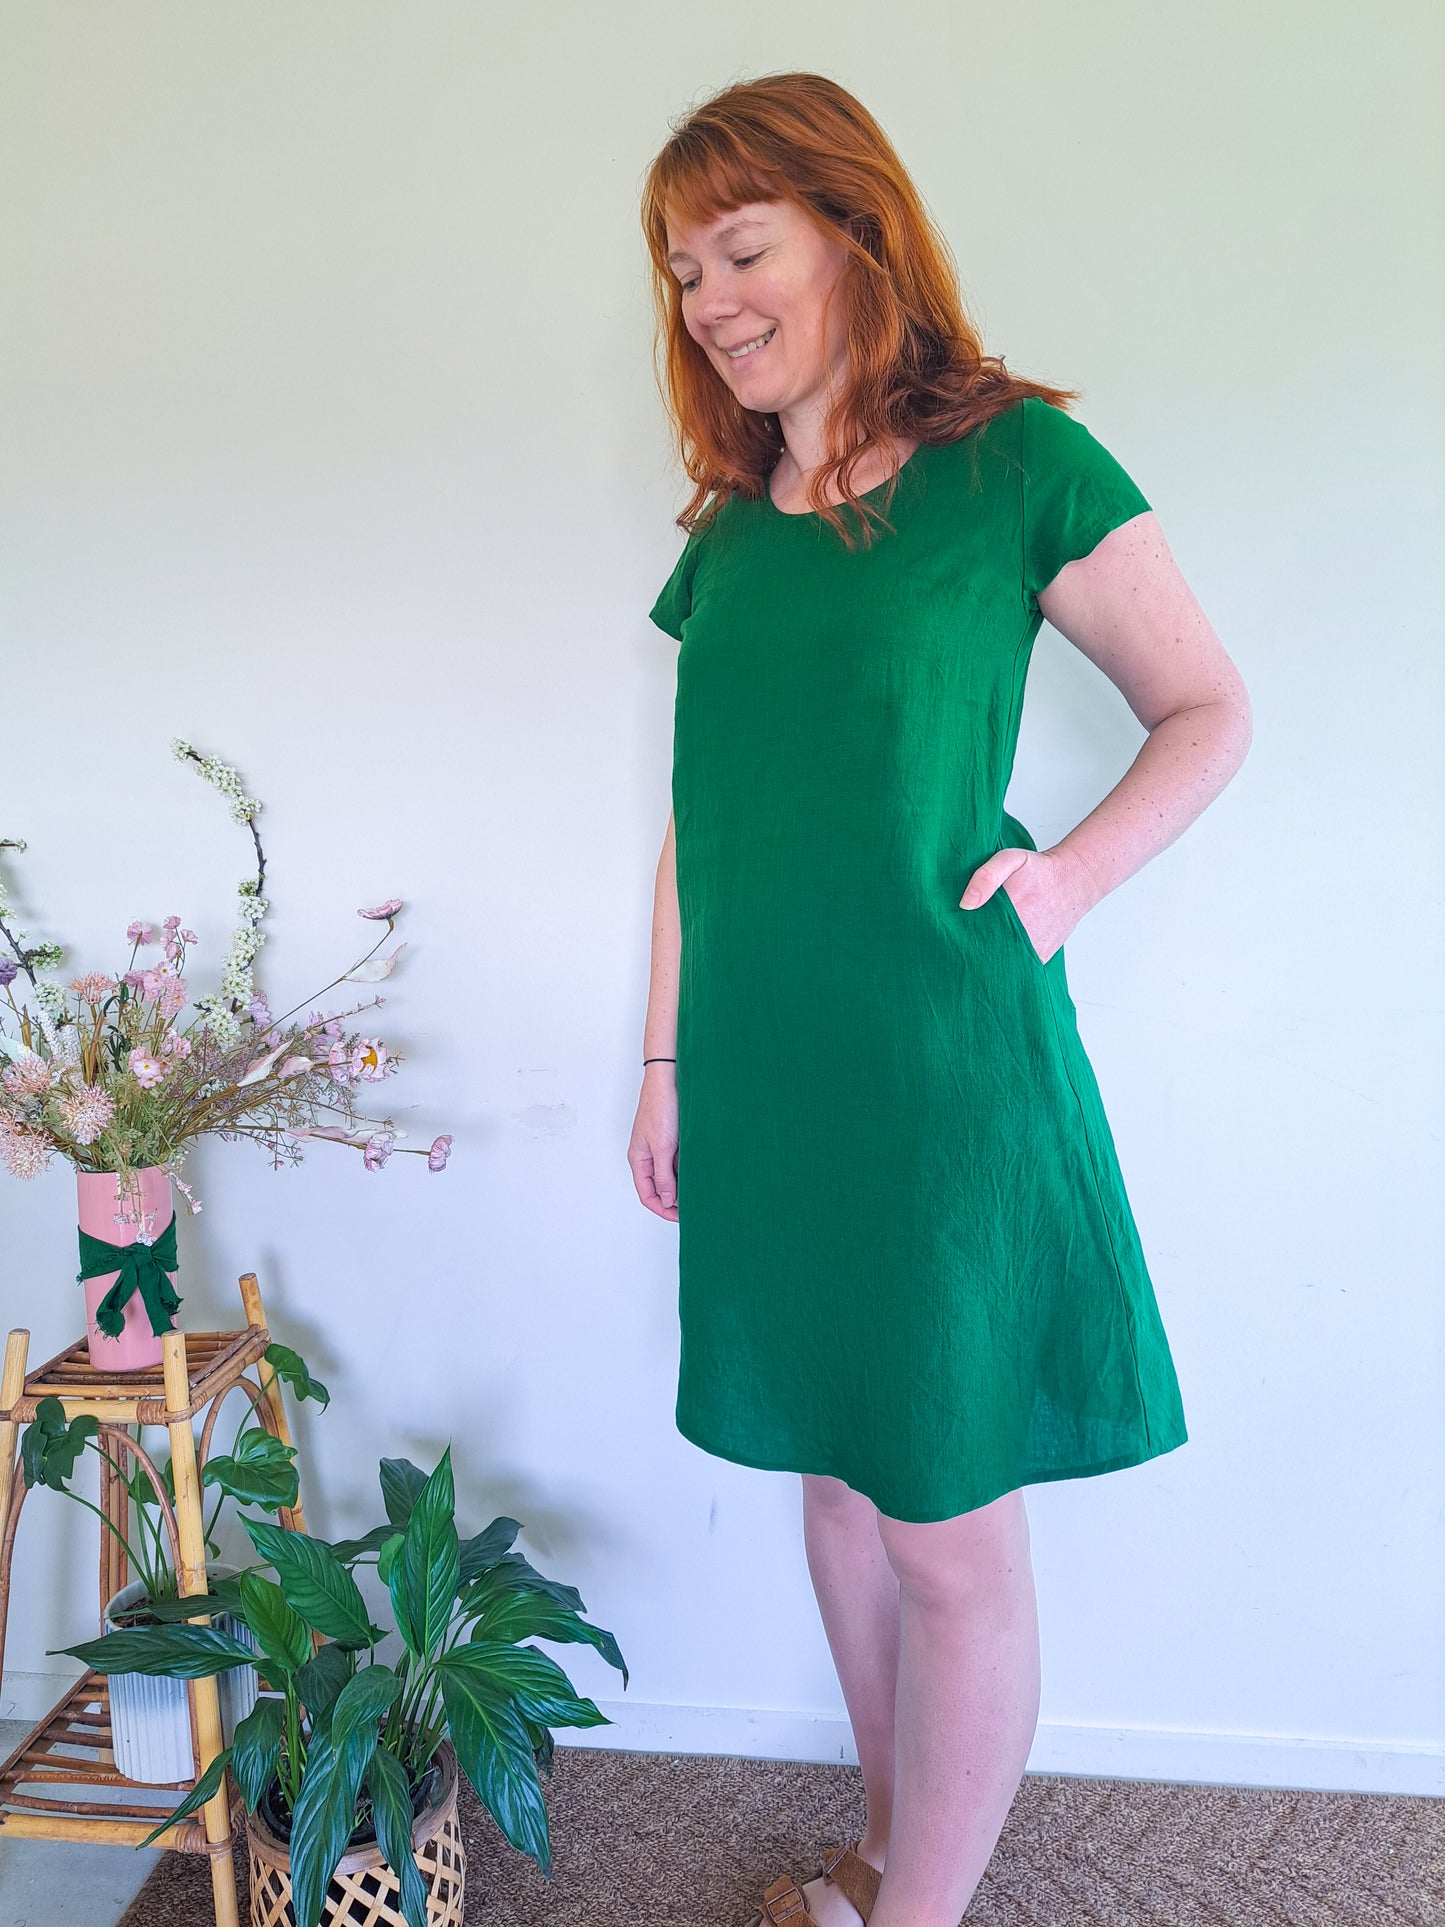 Pre-made Ziggy Dress (emerald linen blend) - sizes S, M, L, XL